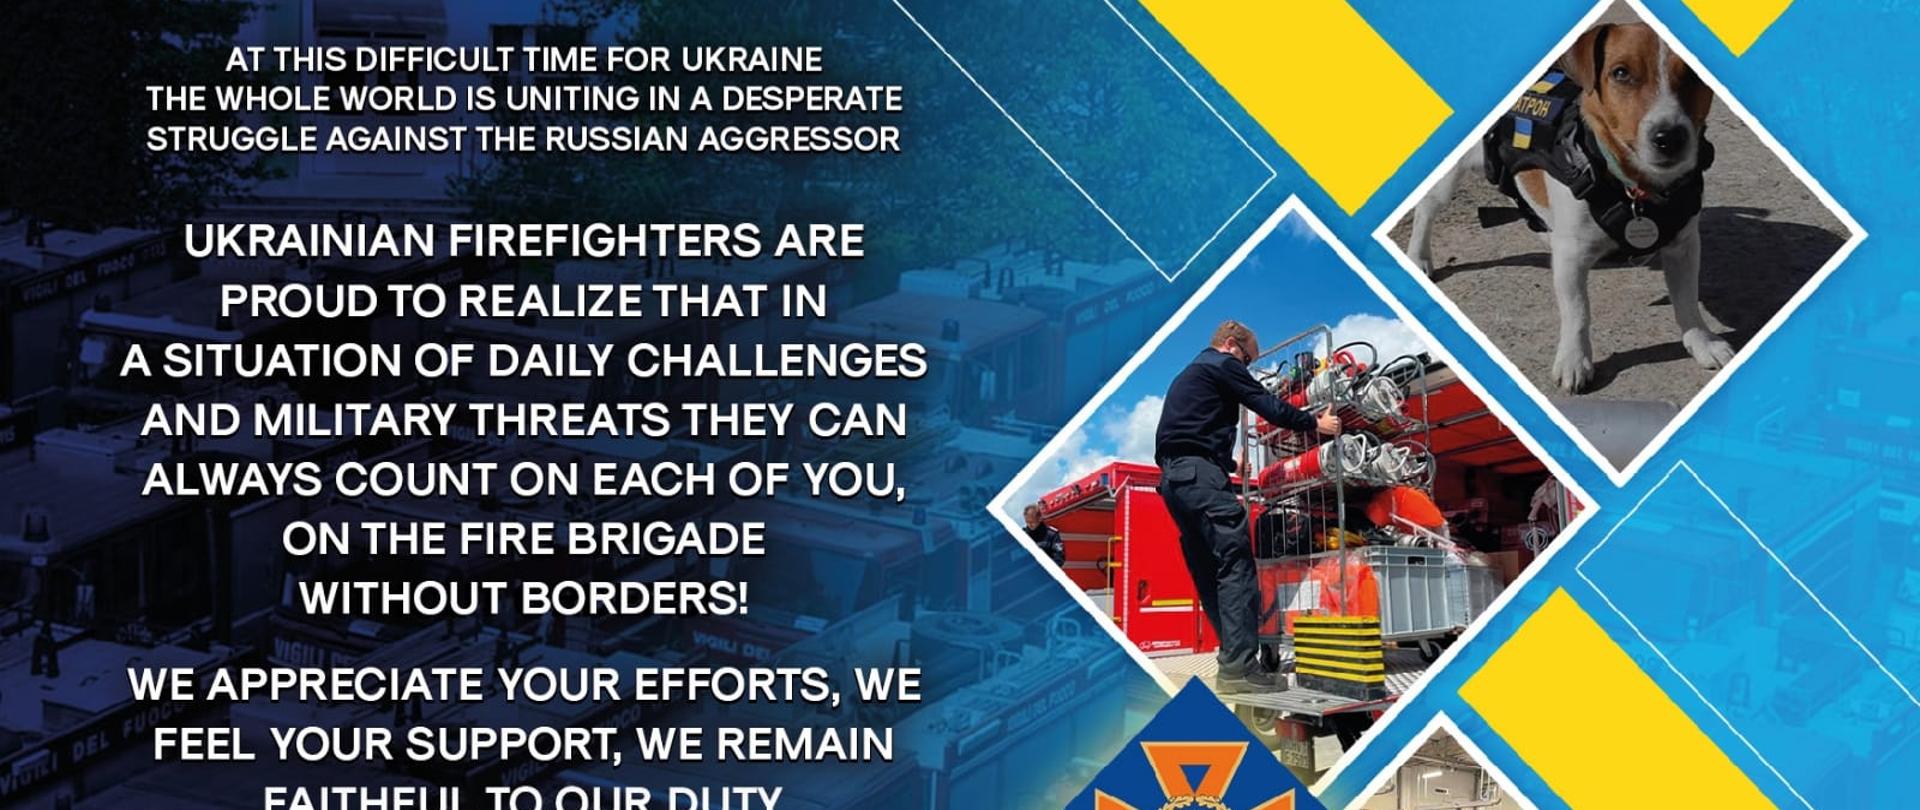 Na zdjęciu widać grafikę w kolorach niebiesko-żółtych z białymi napisami w języku angielskim, wyrażającymi podziękowanie dla polaków za pomoc i wsparcie w obliczu walki z rosyjskim agresorem.